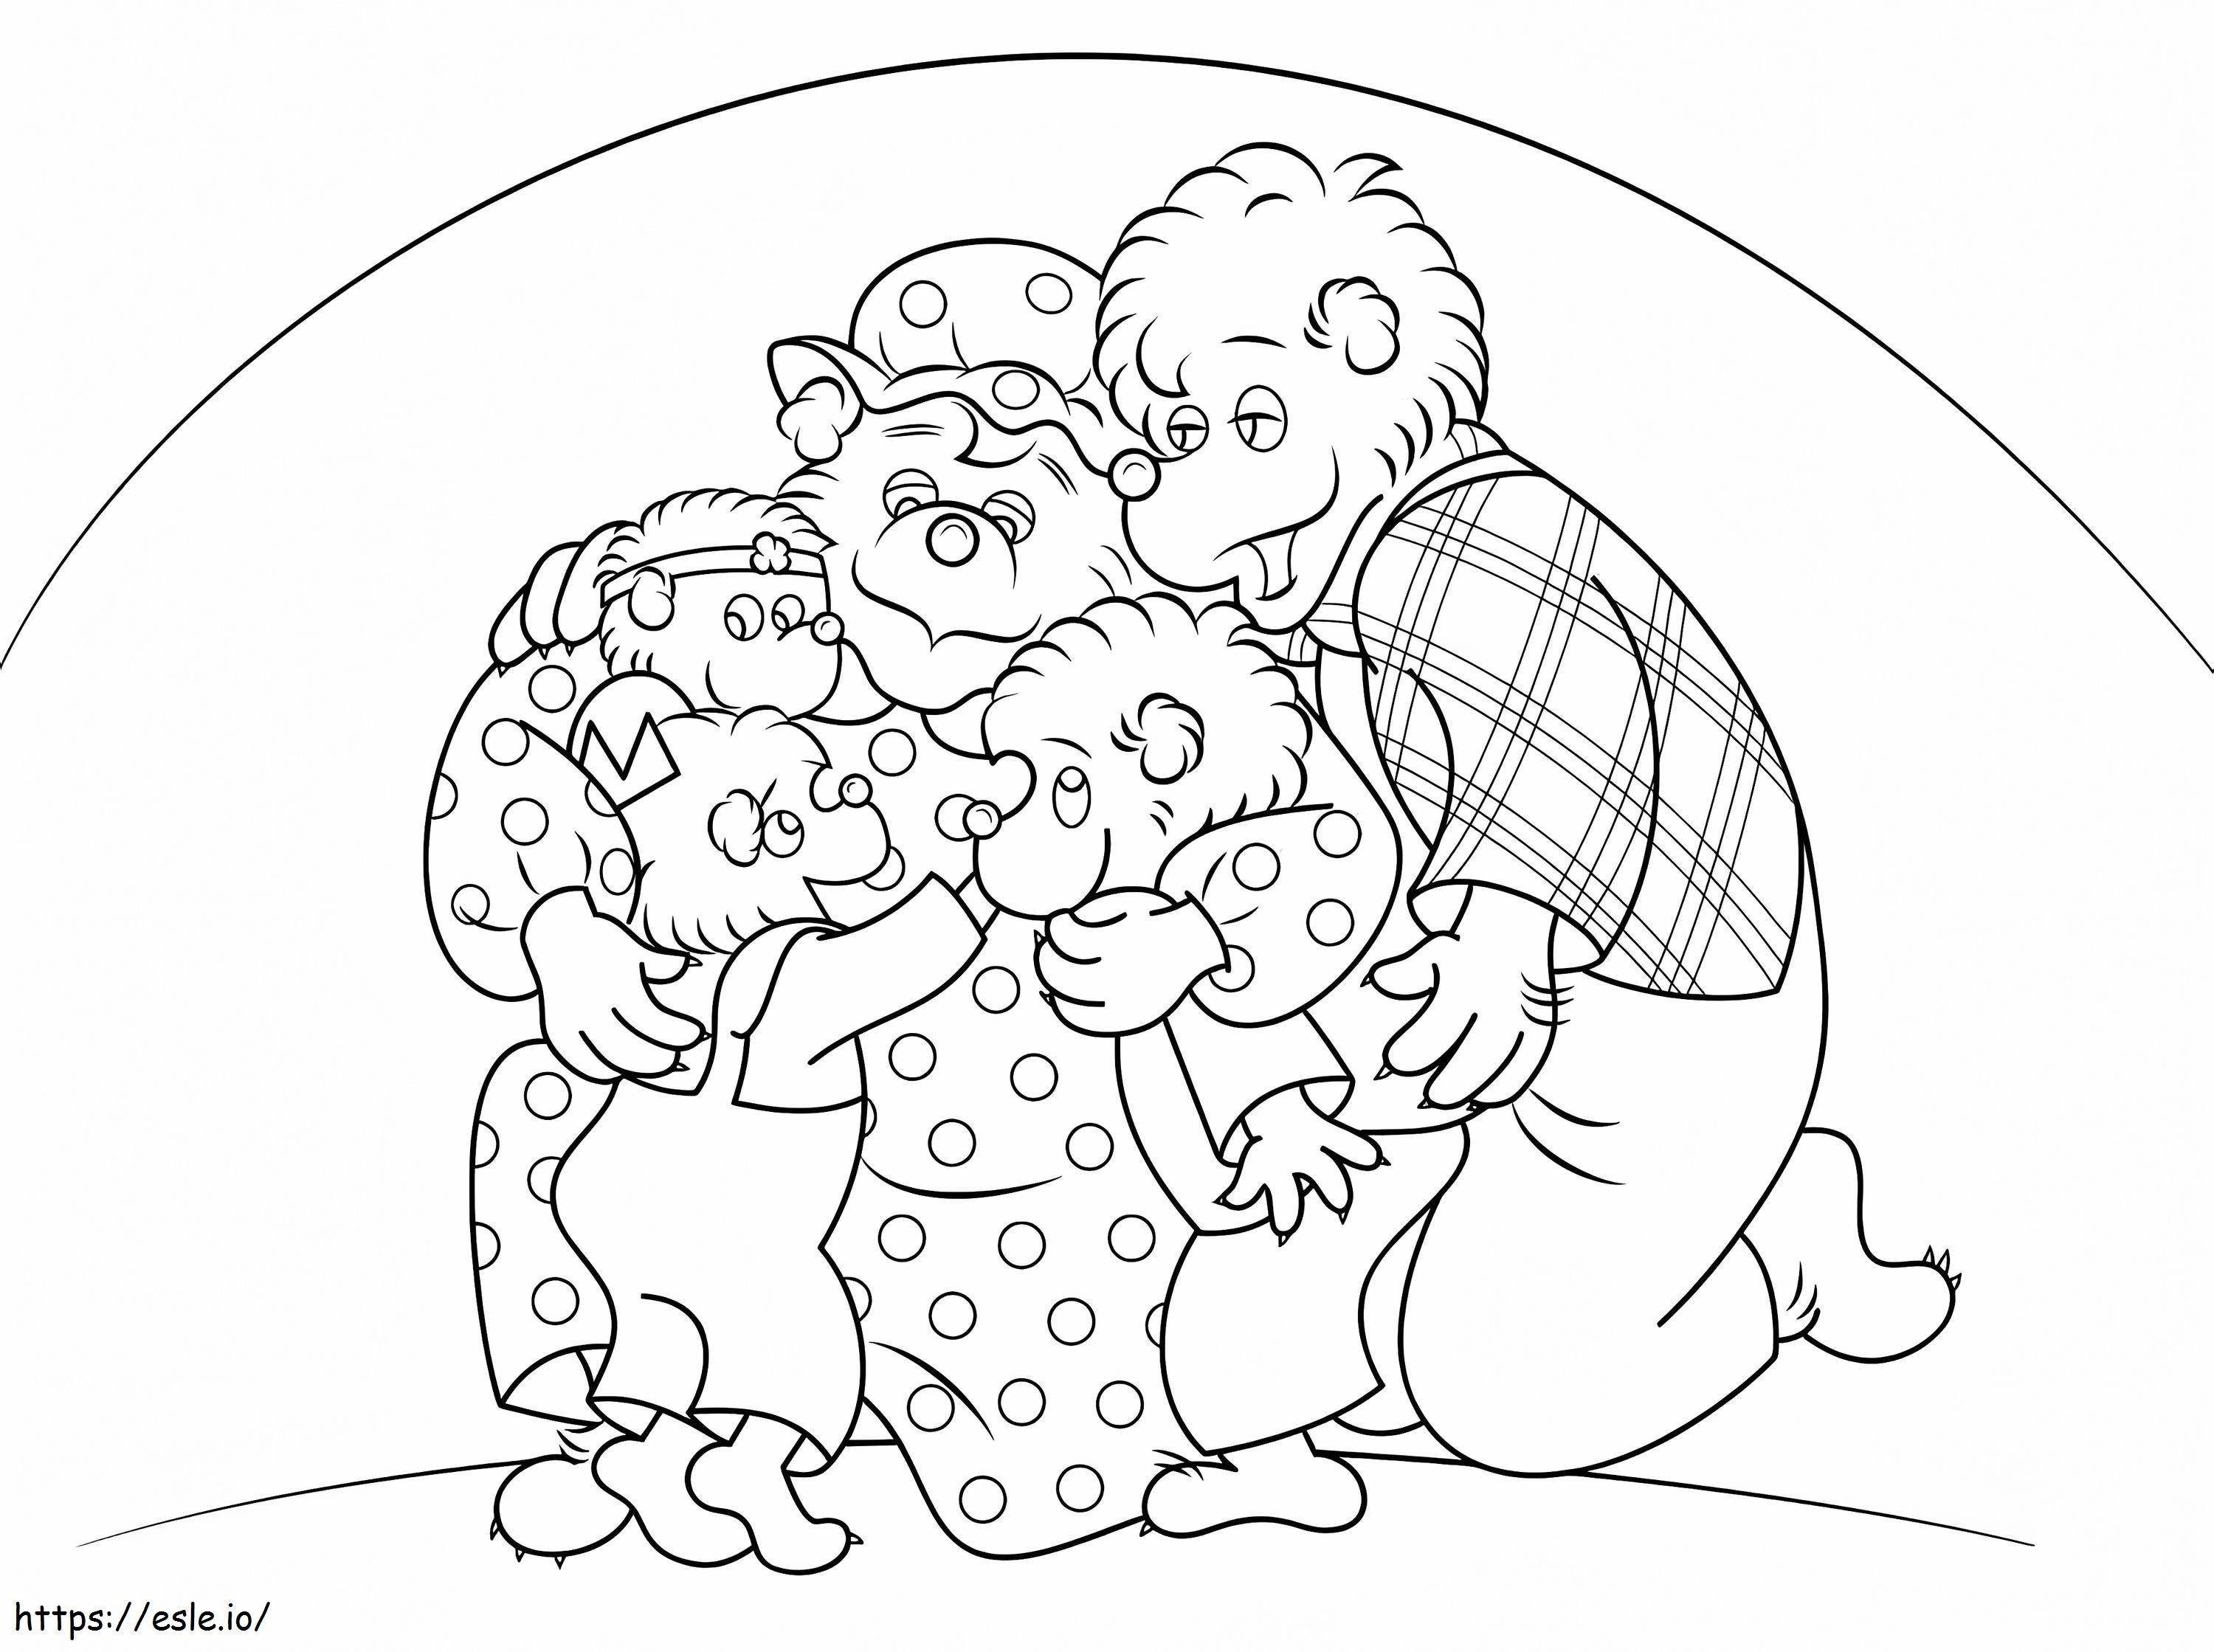 Berenstain Bears Hug coloring page